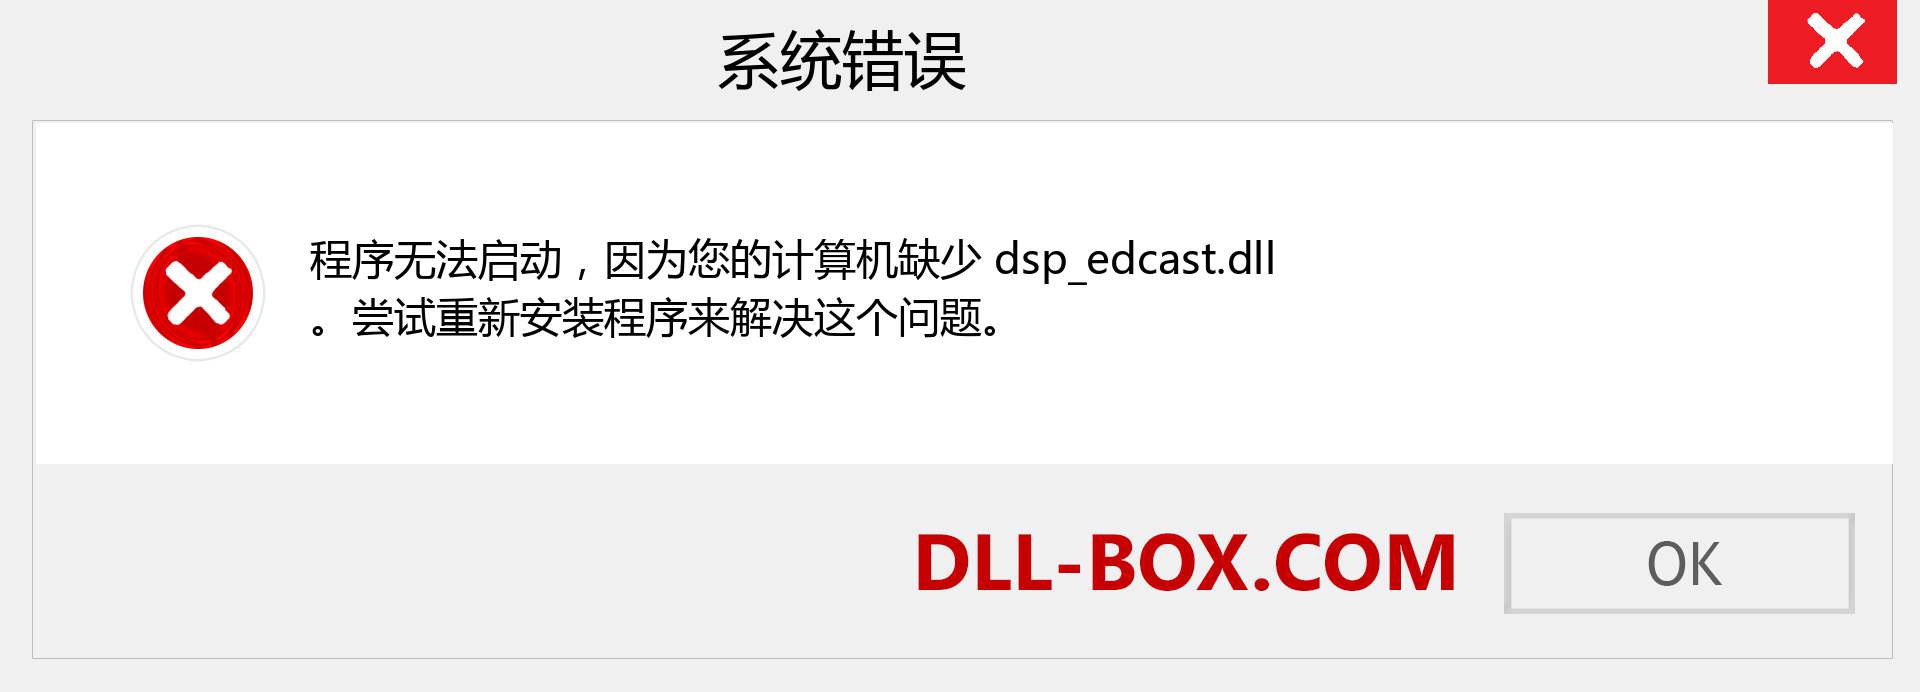 dsp_edcast.dll 文件丢失？。 适用于 Windows 7、8、10 的下载 - 修复 Windows、照片、图像上的 dsp_edcast dll 丢失错误